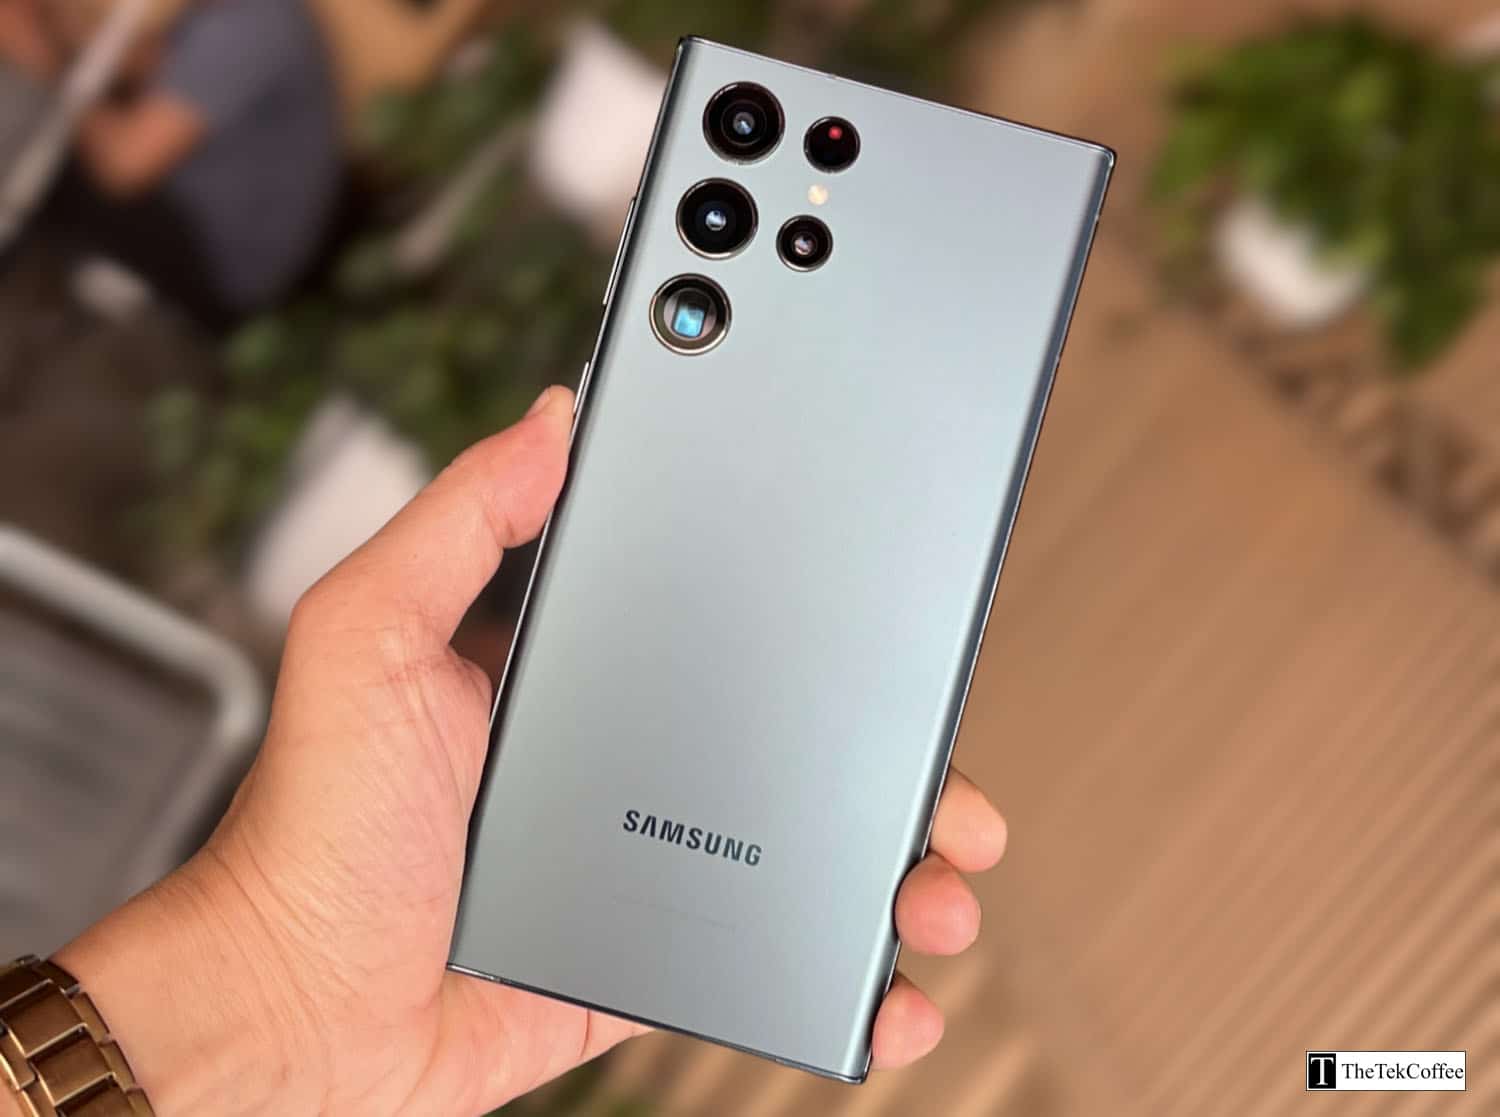 Samsung Galaxy S22 Ultra là điện thoại thông minh cao cấp mới nhất của Samsung. Nó được trang bị các tính năng và thông số kỹ thuật hàng đầu, bao gồm màn hình Super AMOLED 6,8 inch, camera quad 108MP, chip xử lý Snapdragon 8 Gen 1 và pin 5.000mAh. Nếu bạn đang sở hữu một chiếc điện thoại thông minh tốt nhất trên thị trường hiện nay thì hãy xem 4 mẹo sử dụng Samsung Galaxy S22 Ultra hiệu quả nhất để áp dụng